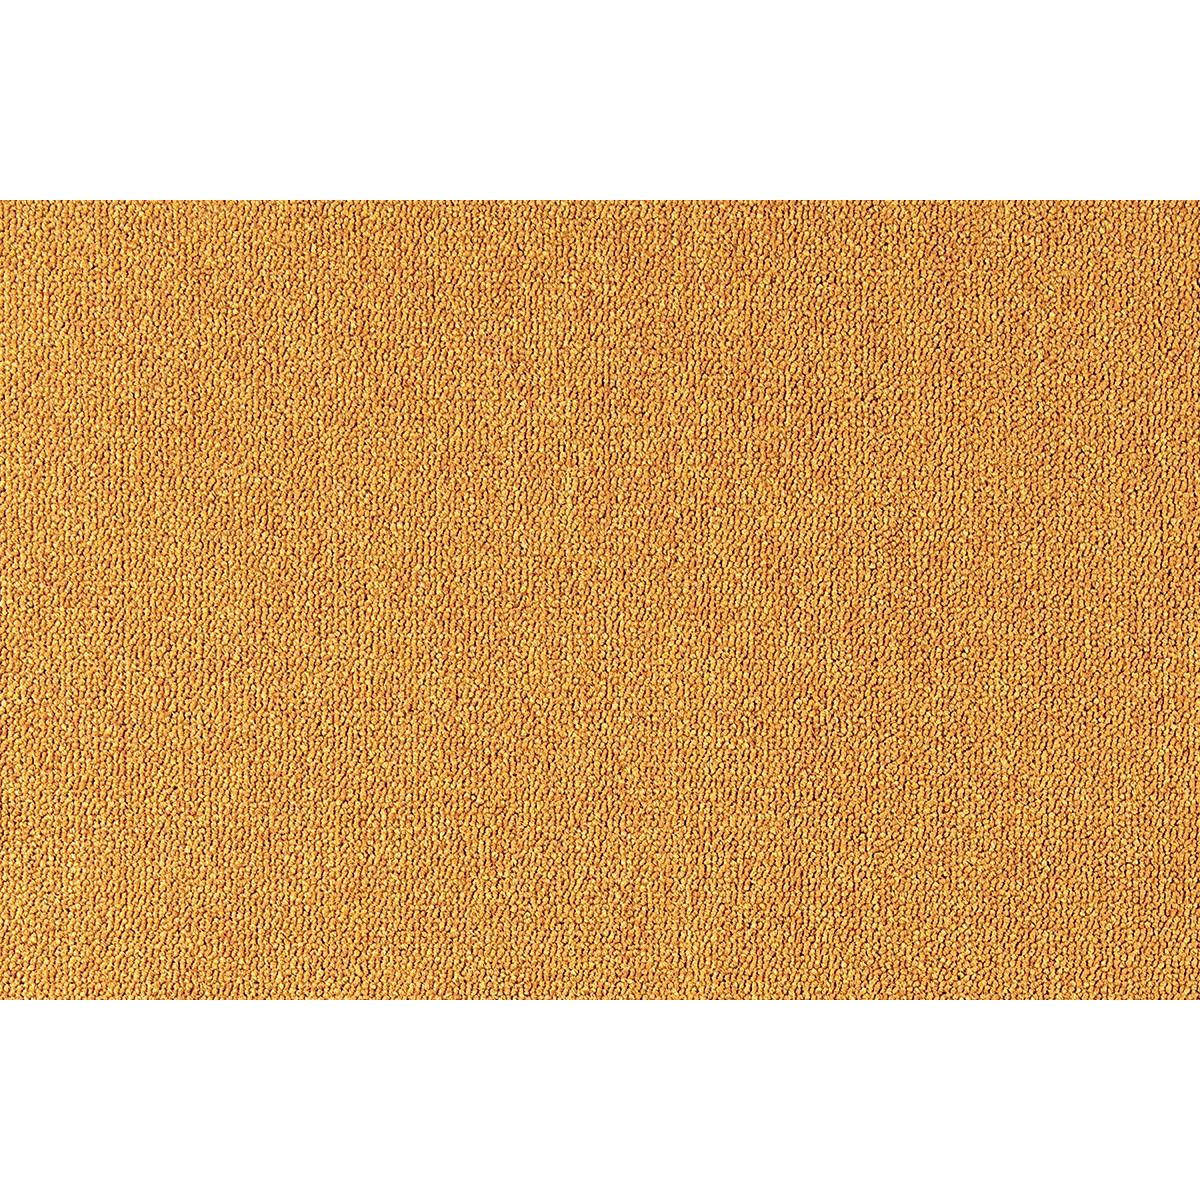 AKCE: 199x260 cm Metrážový koberec Cobalt SDN 64049 - AB hořčicový, zátěžový